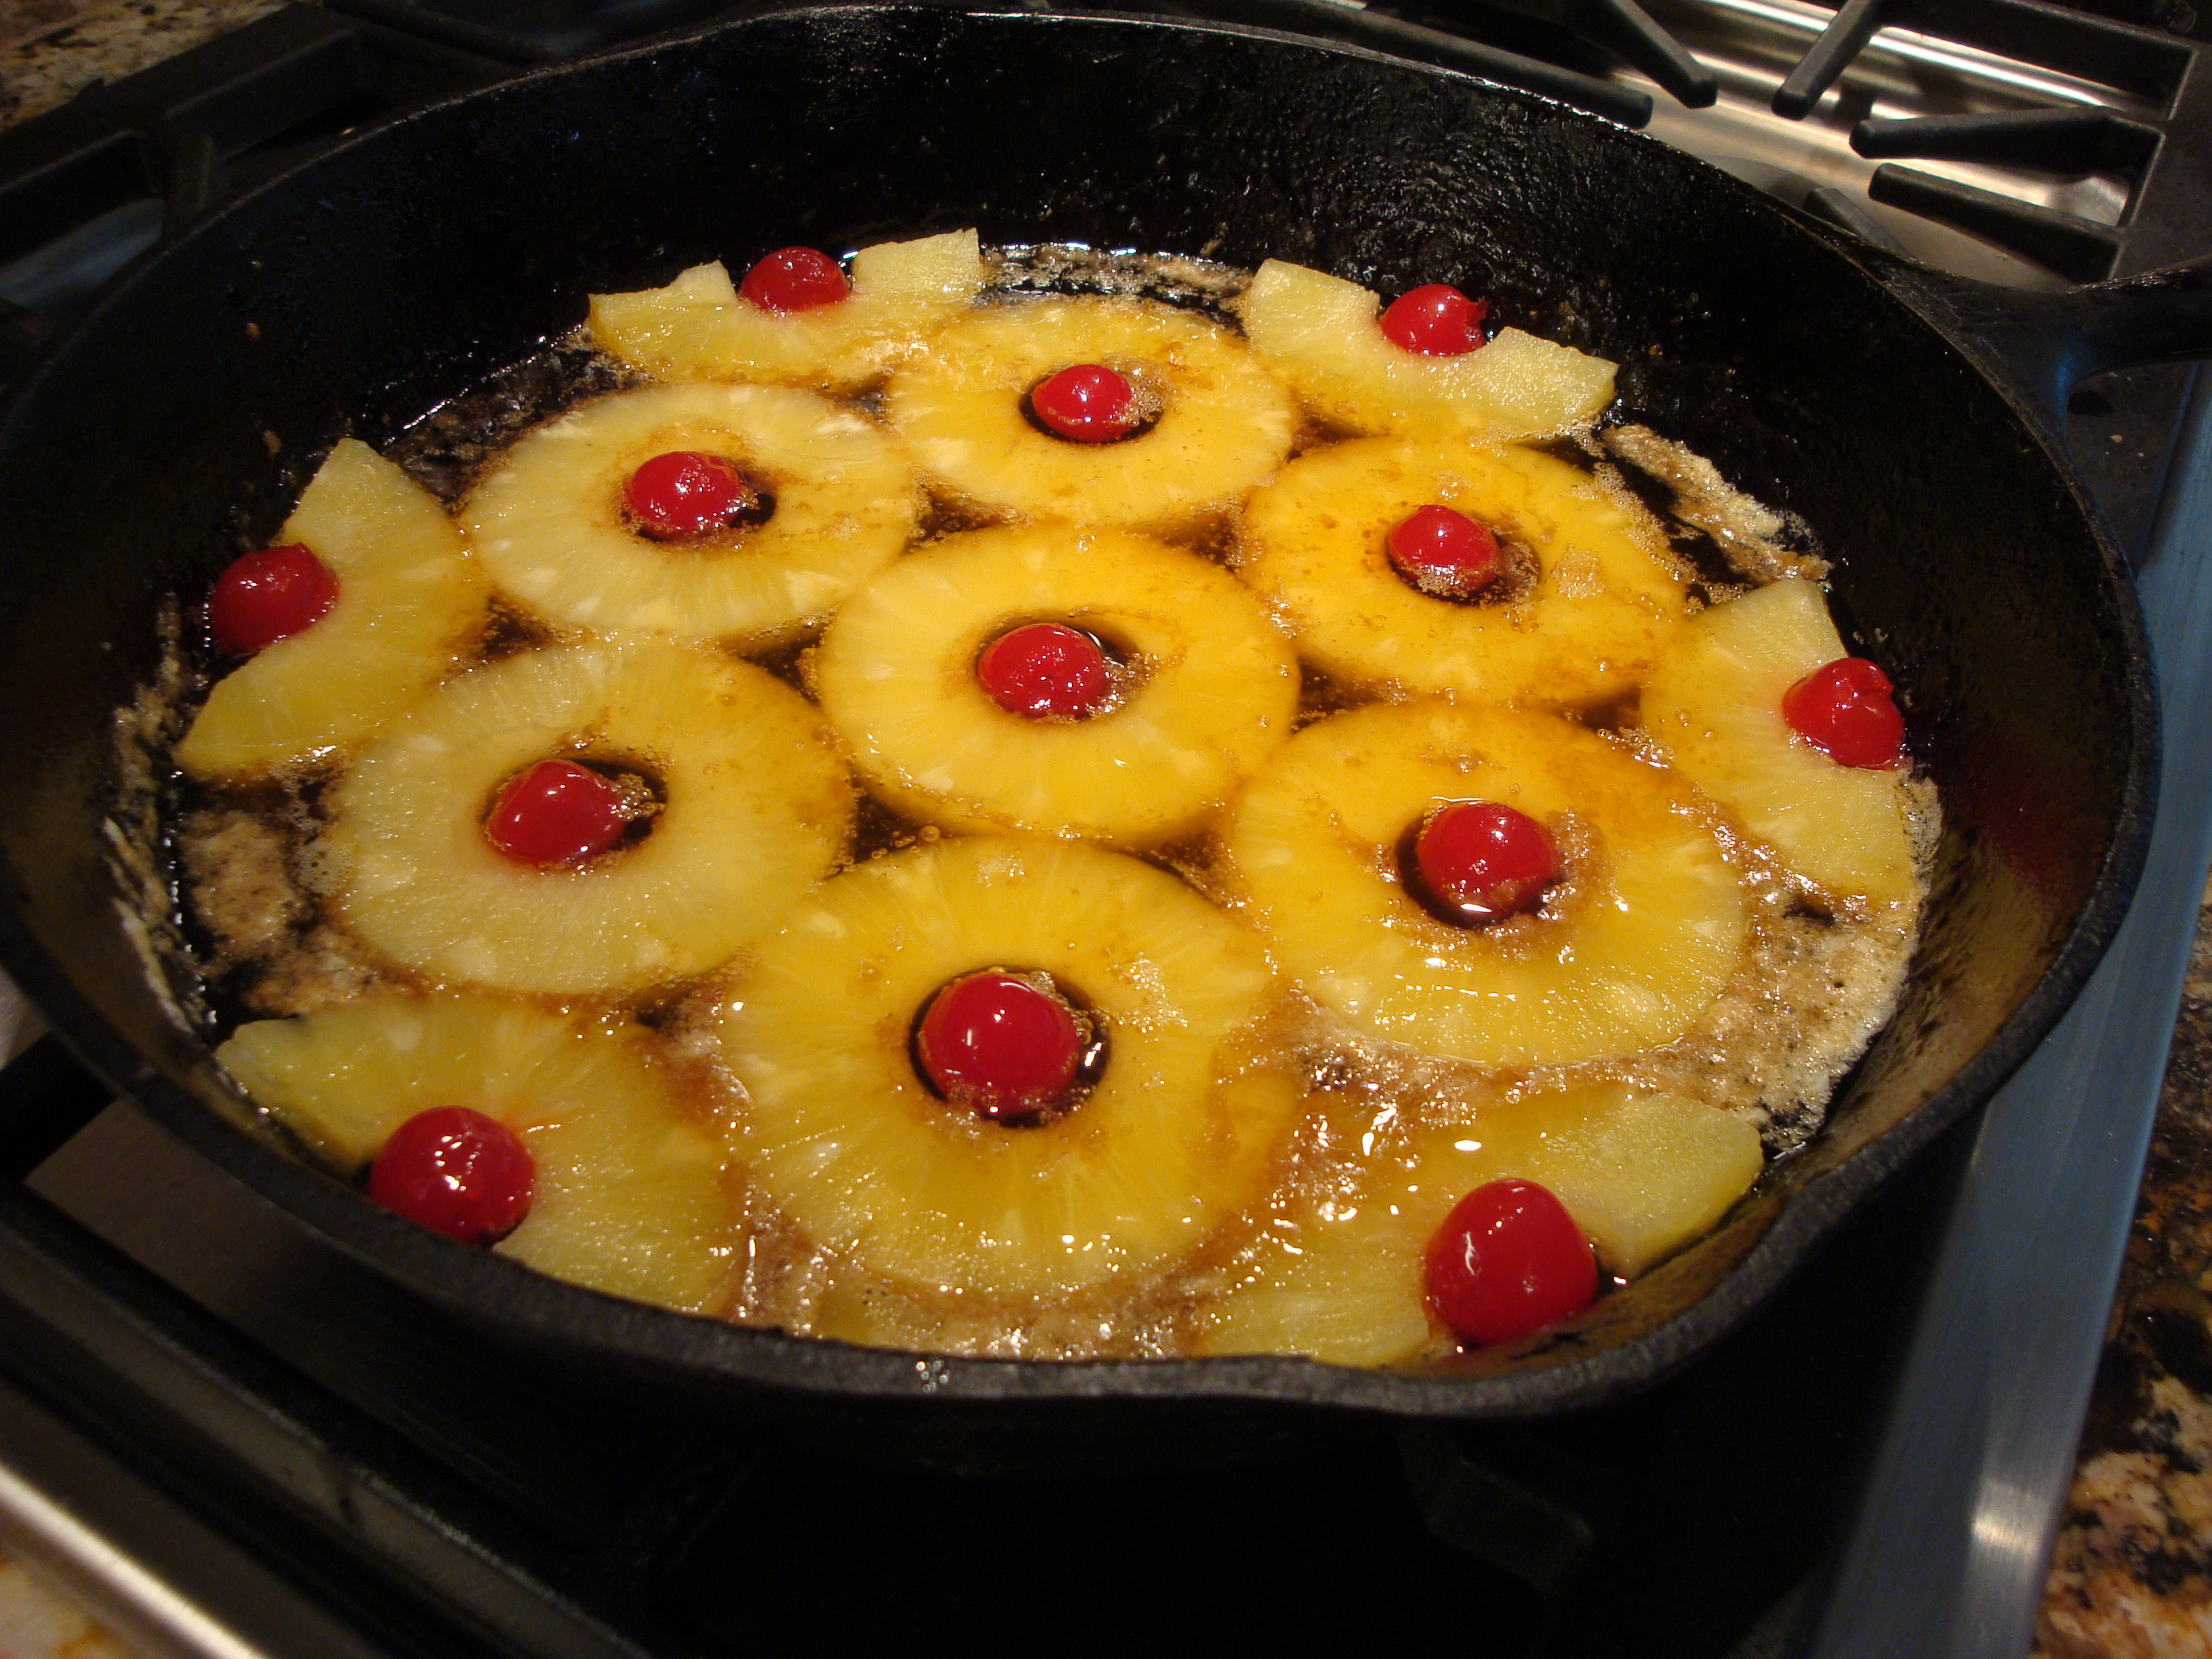 pineapple and maraschino cherries